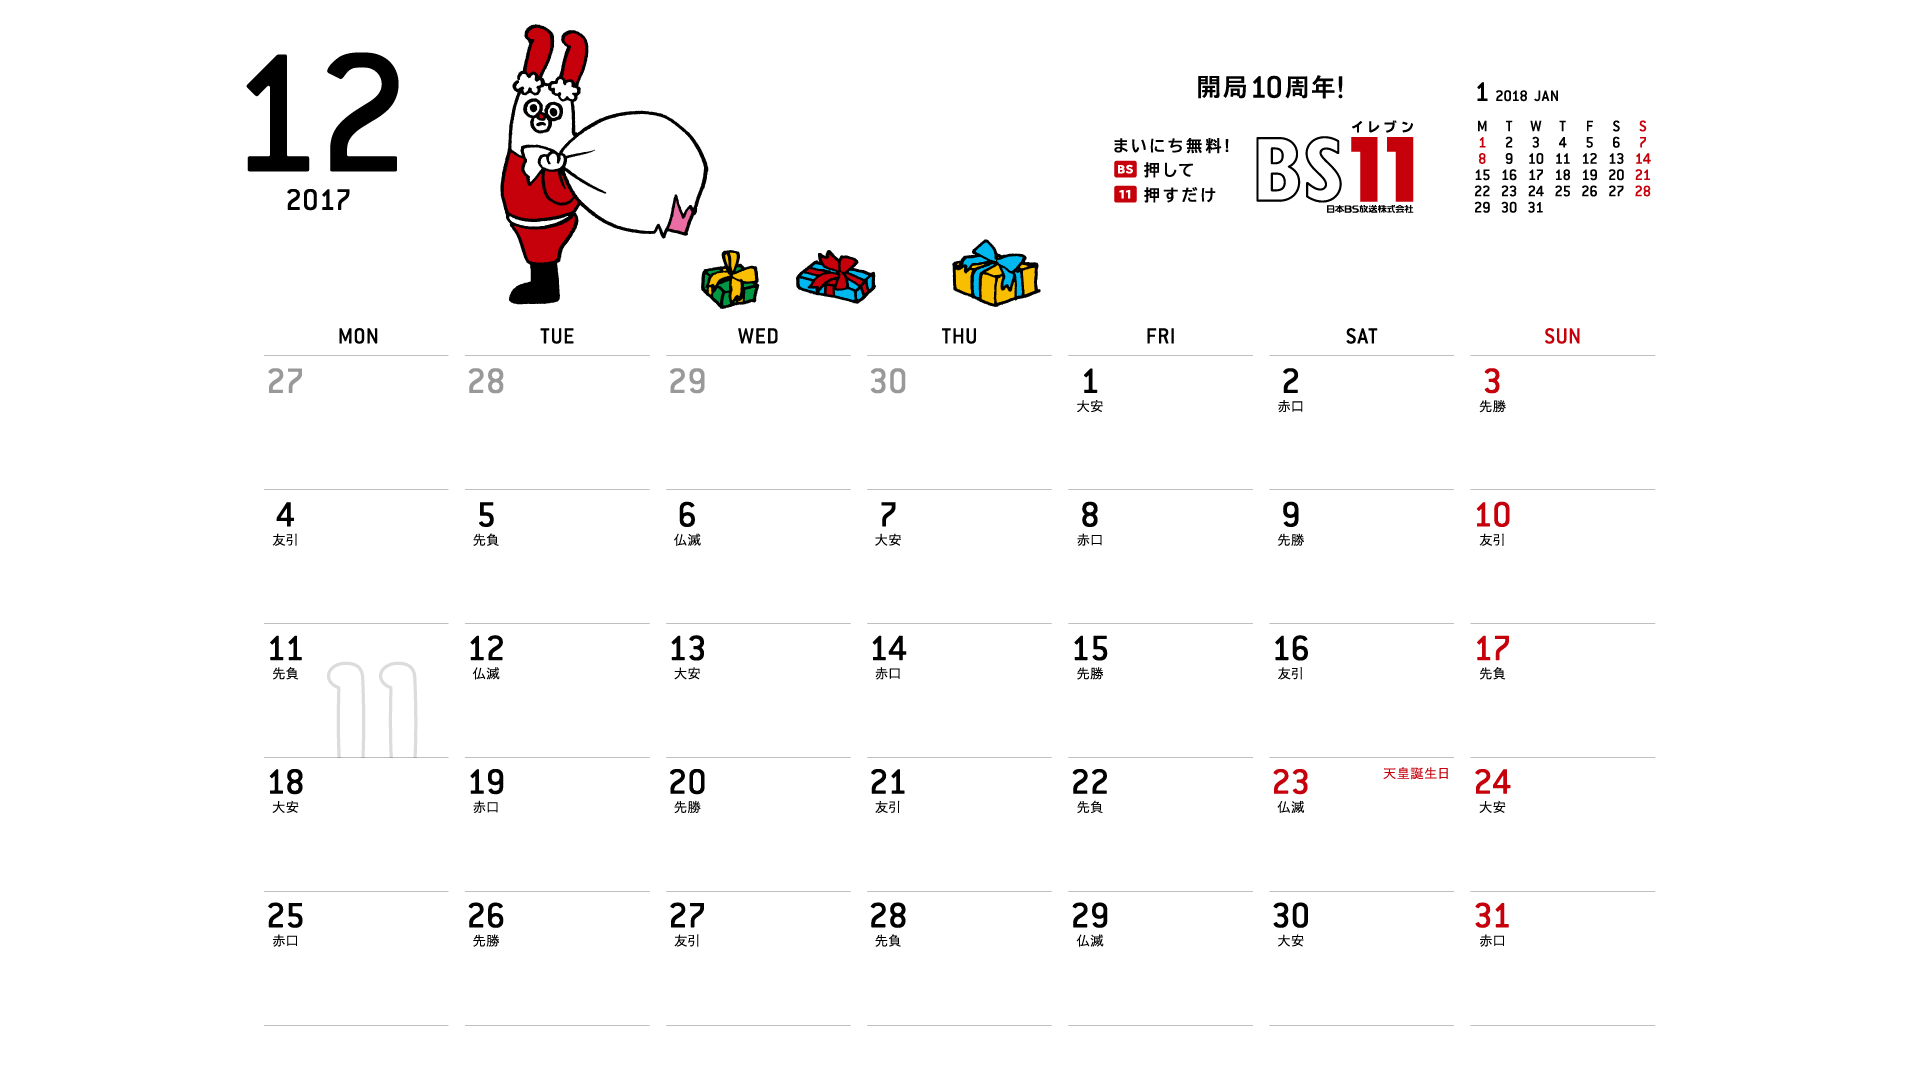 じゅういっちゃんのデジタルカレンダー17年12月 Bs11 イレブン いつでも無料放送